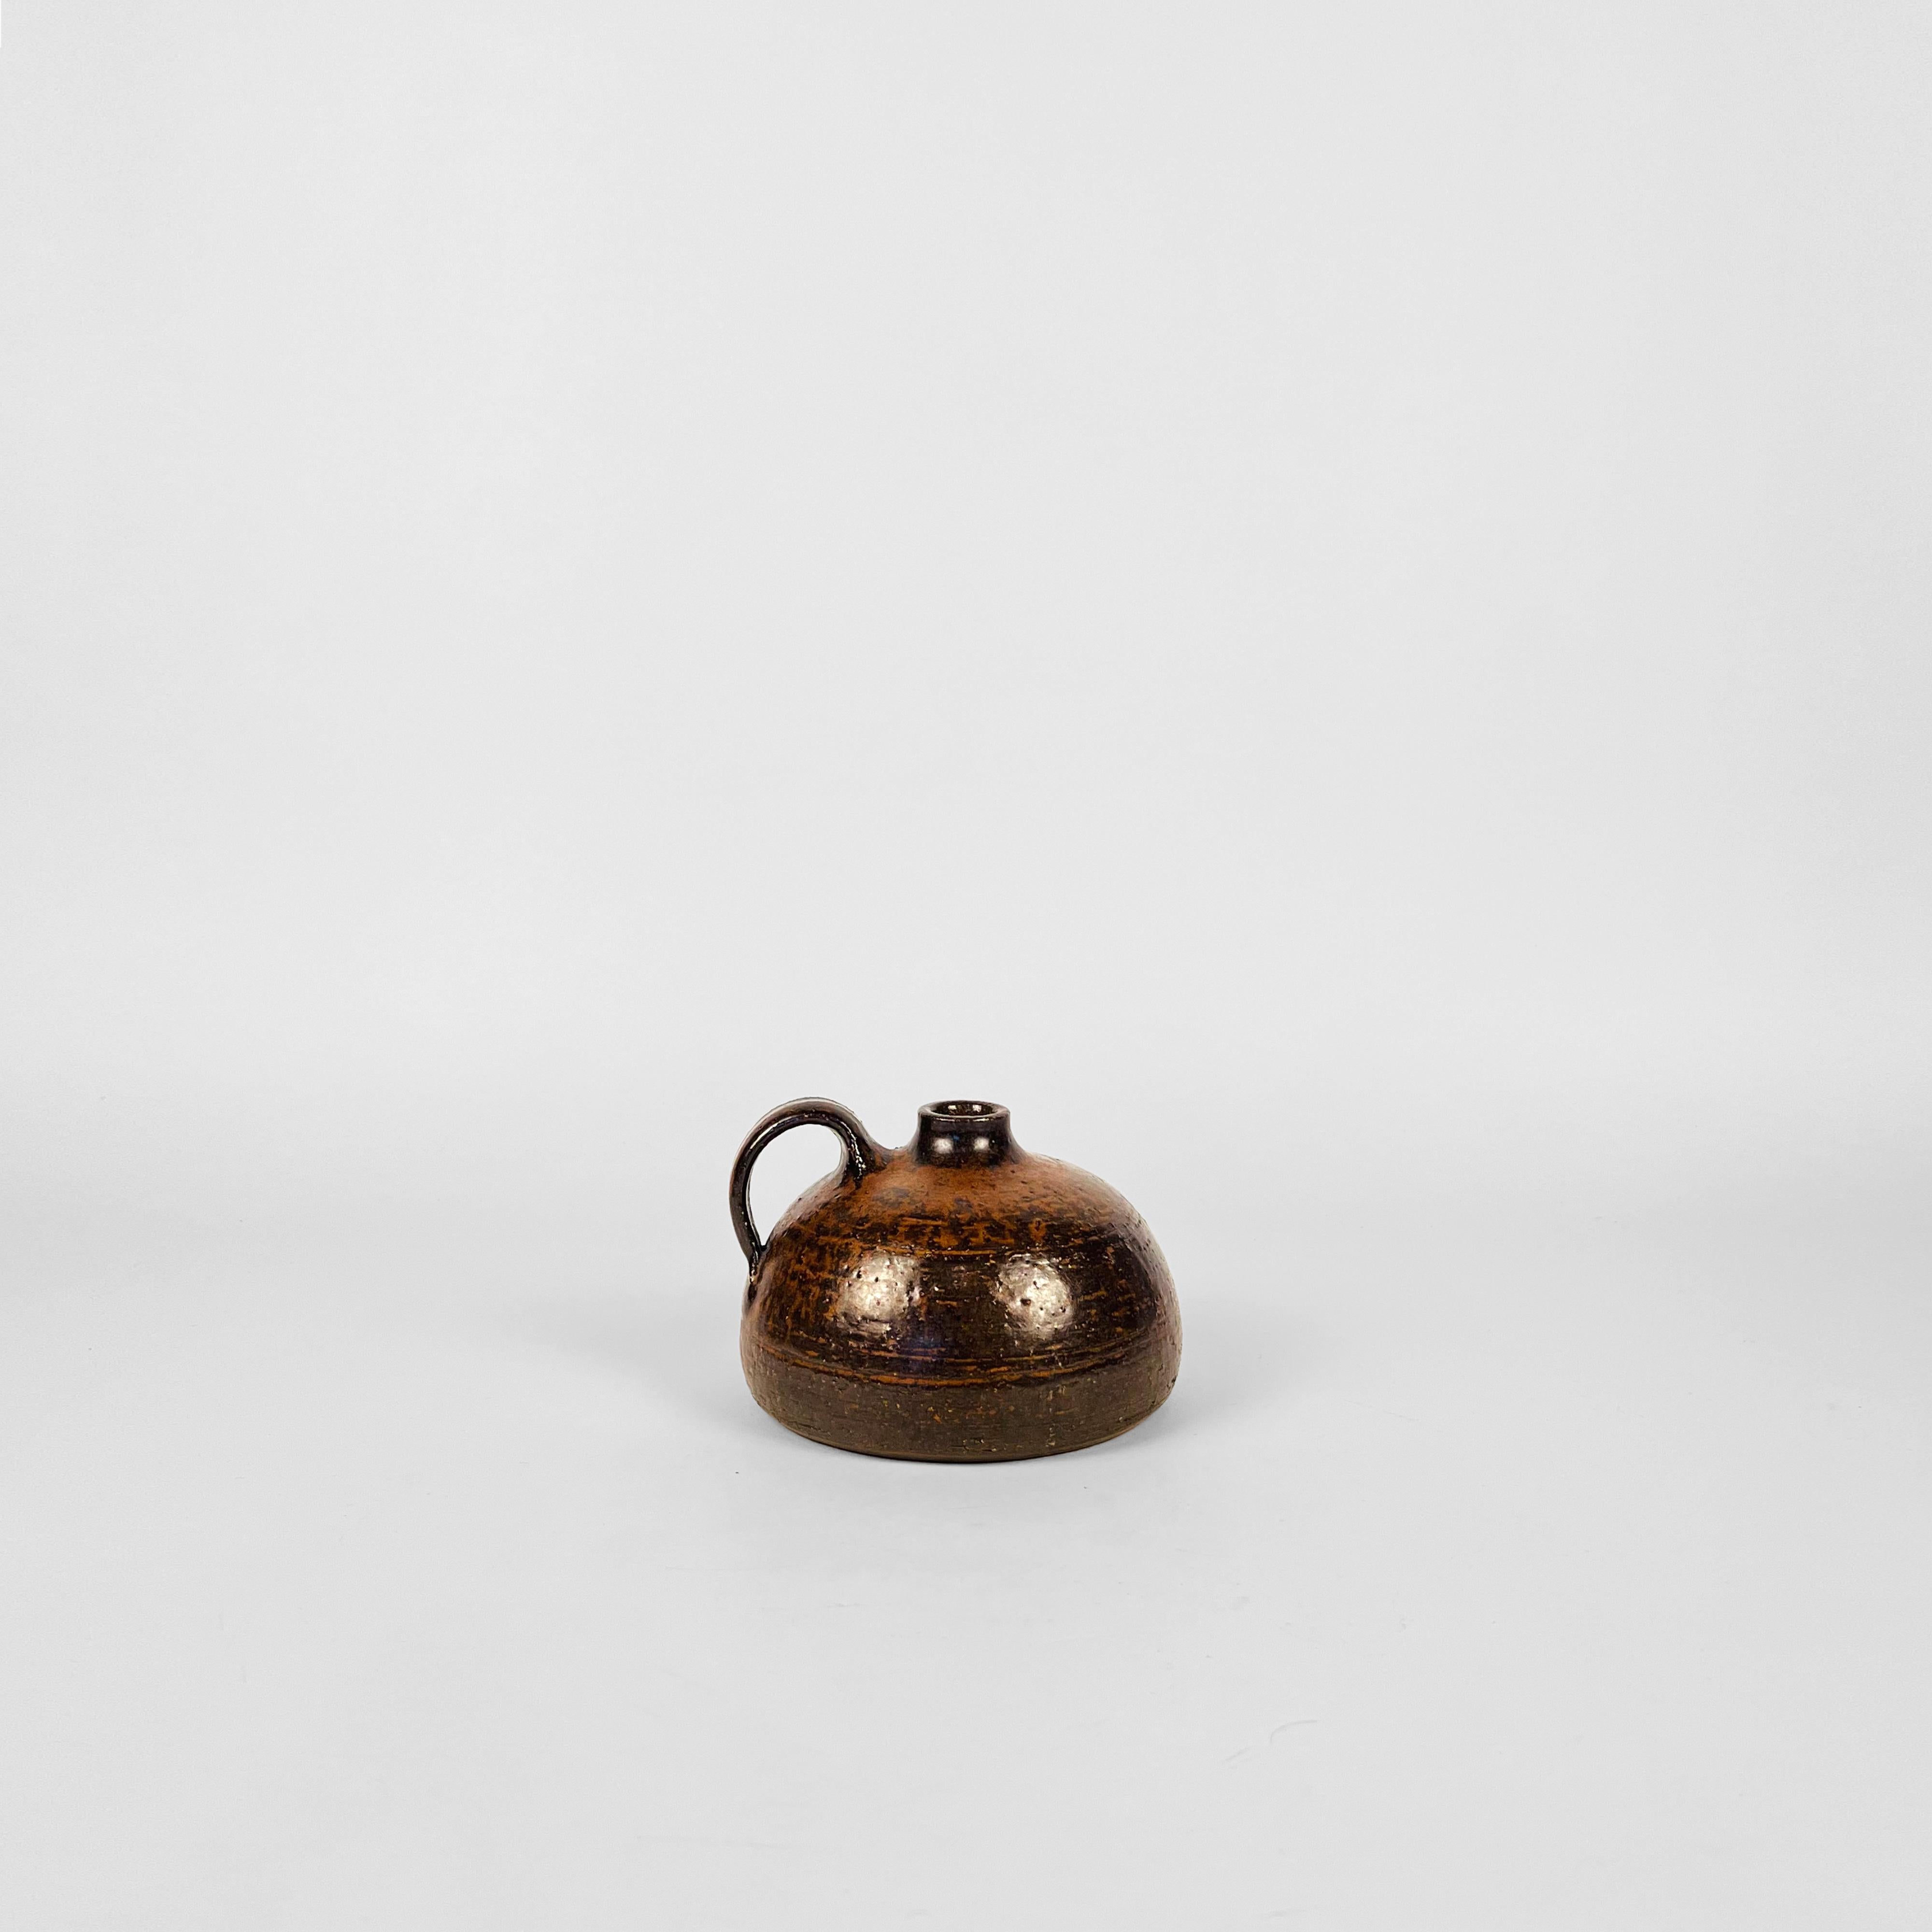 Jarrón de estudio con asa de mediados de siglo, Alemania Occidental, obra del famoso ceramista Rudi Stahl. Este jarrón también puede utilizarse como portavelas.
Acabado en tonos tierra claros texturizados con un toque de óxido.
Firmada a mano por el